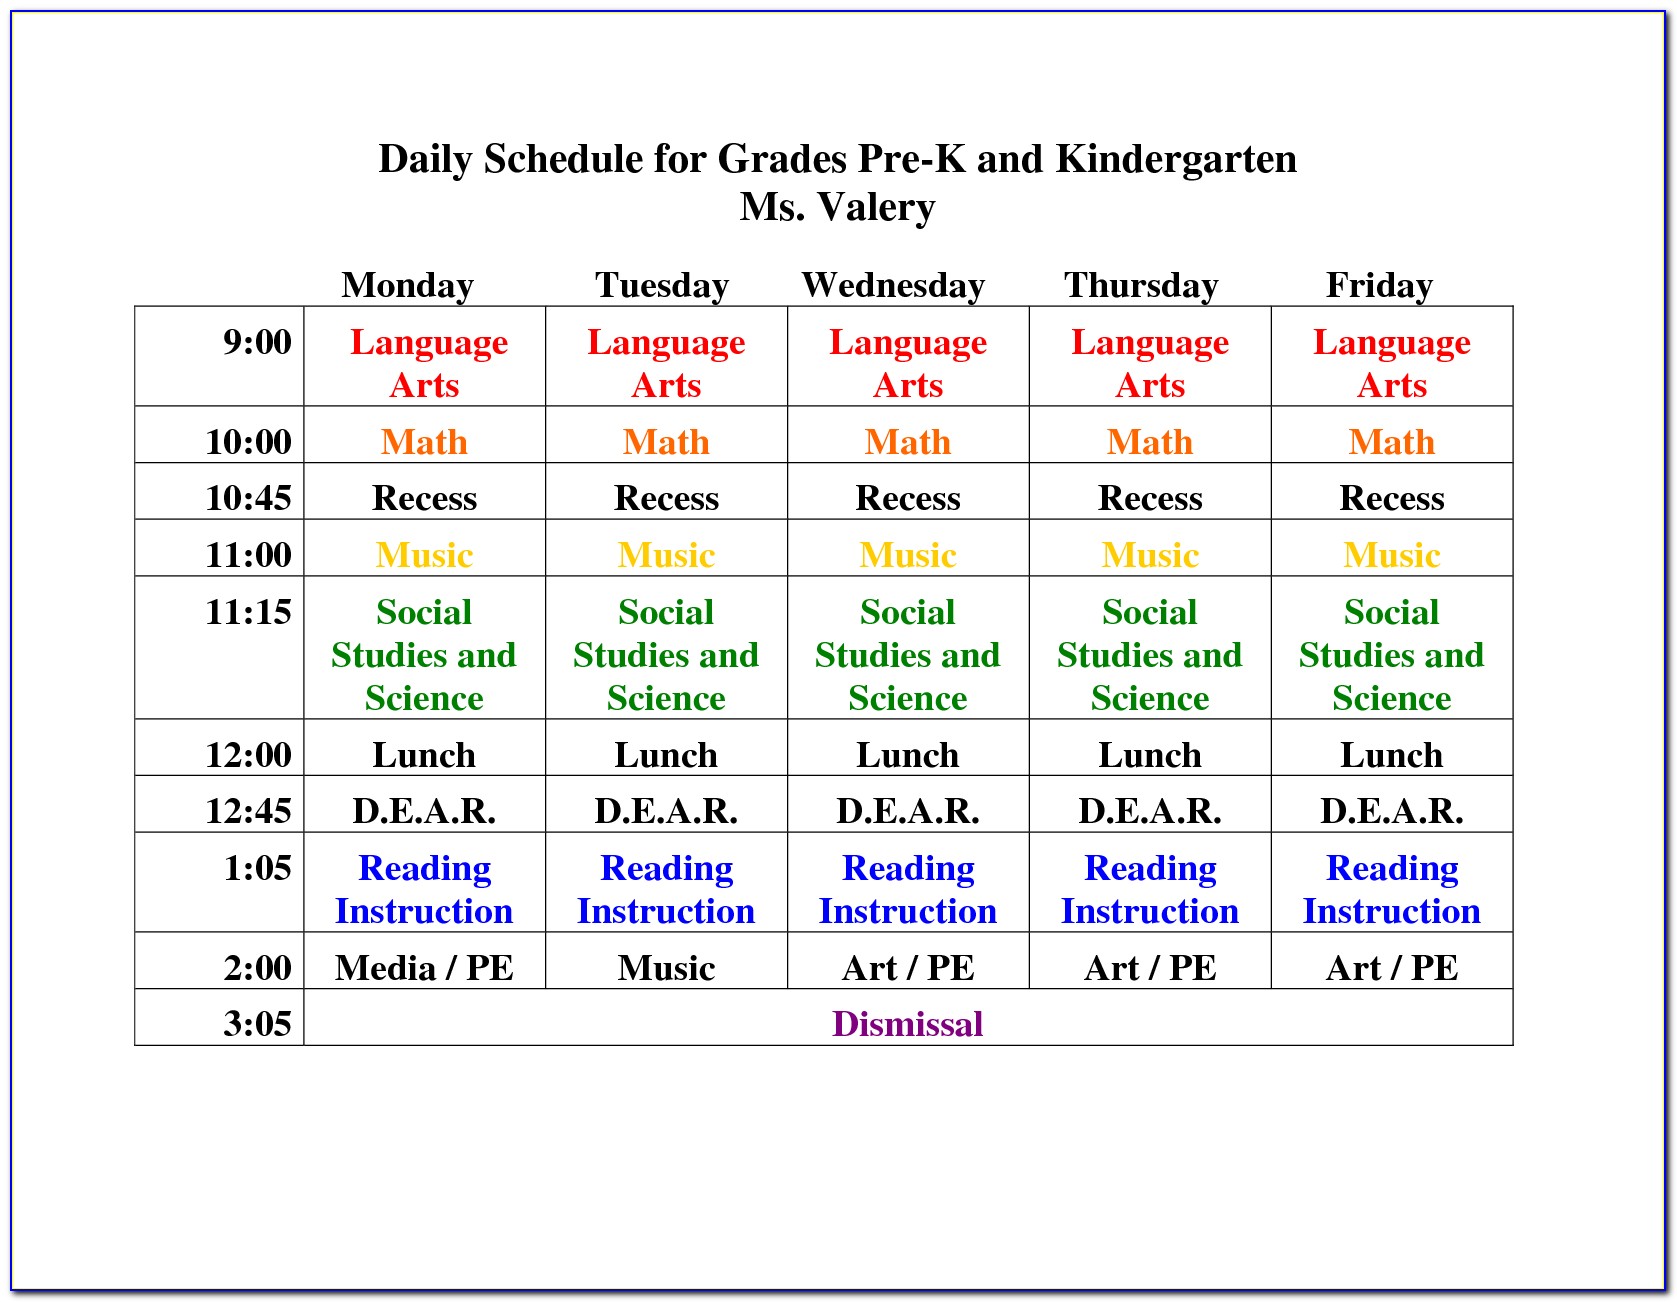 Preschool Weekly Planner Template